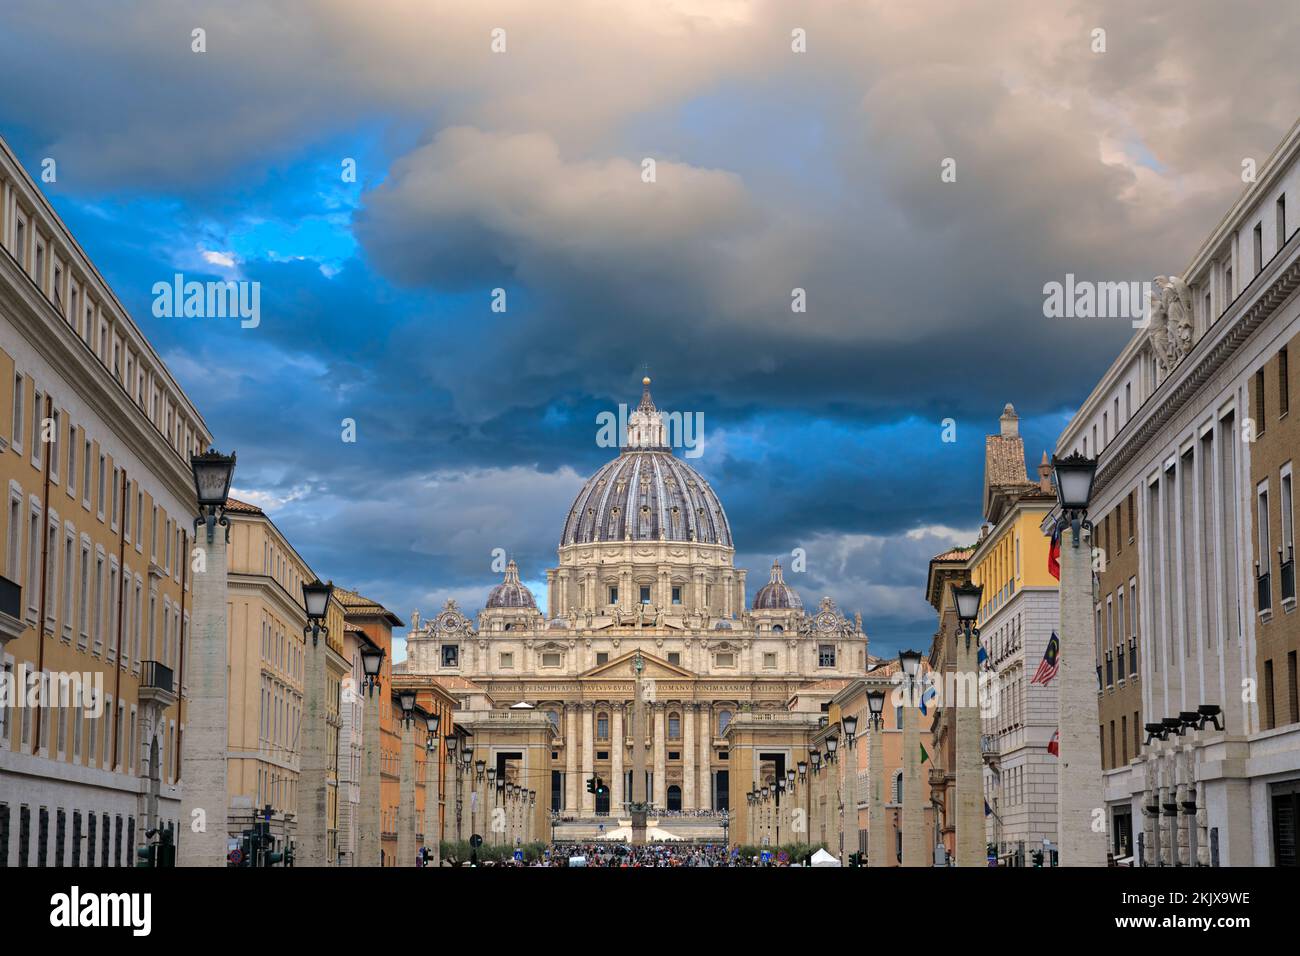 View of Saint Peter's Basilica in Rome from the Via della Conciliazione, Italy. Stock Photo